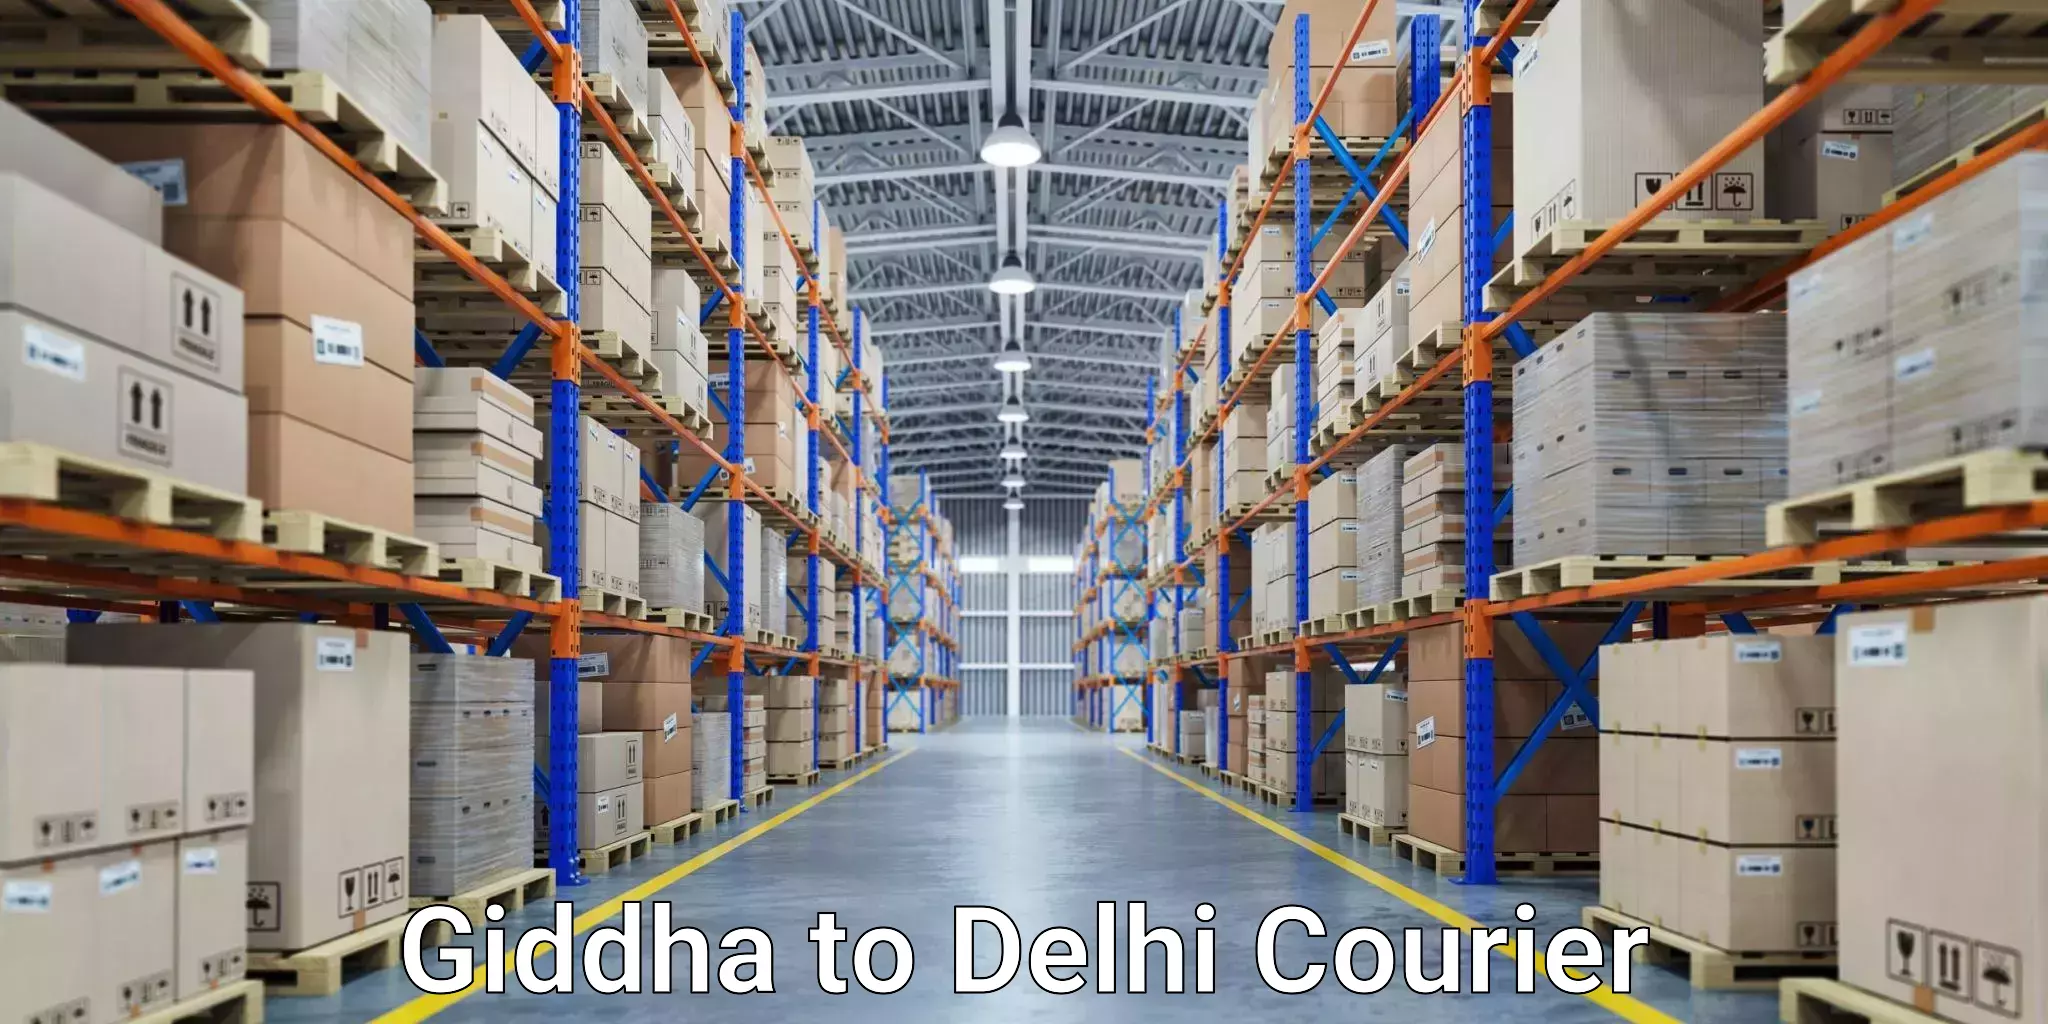 Overnight delivery services Giddha to Jamia Millia Islamia New Delhi